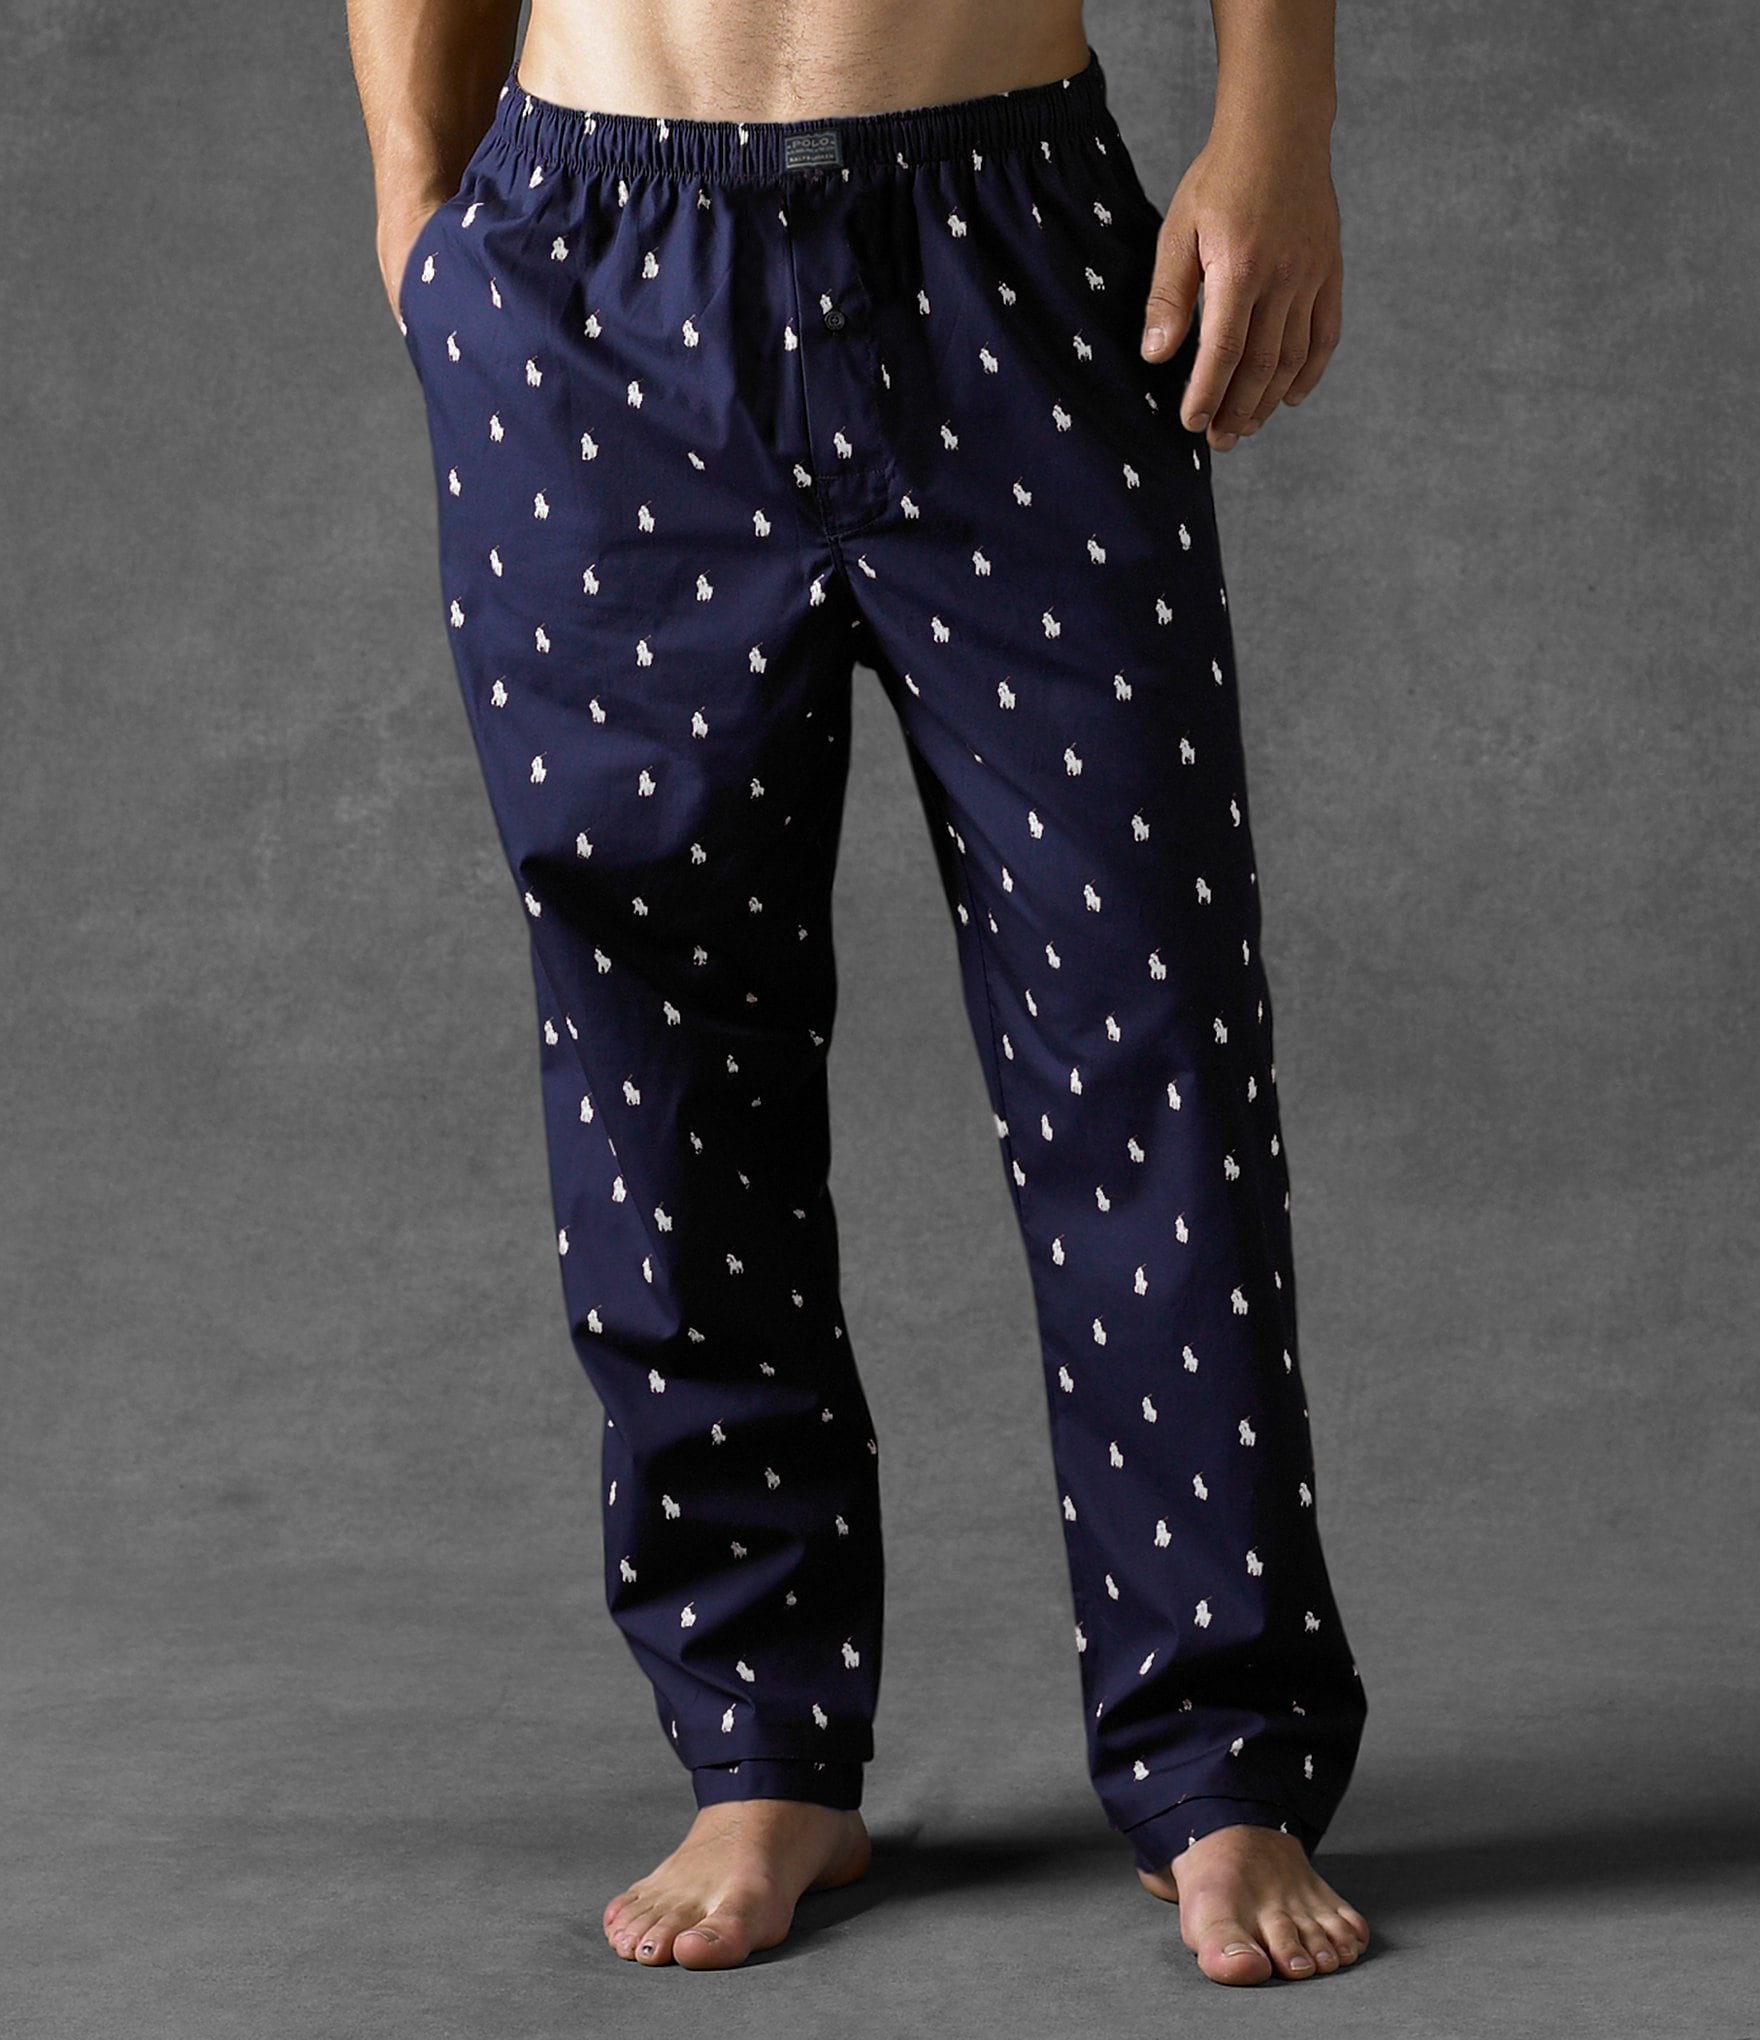 blue polo pajama pants